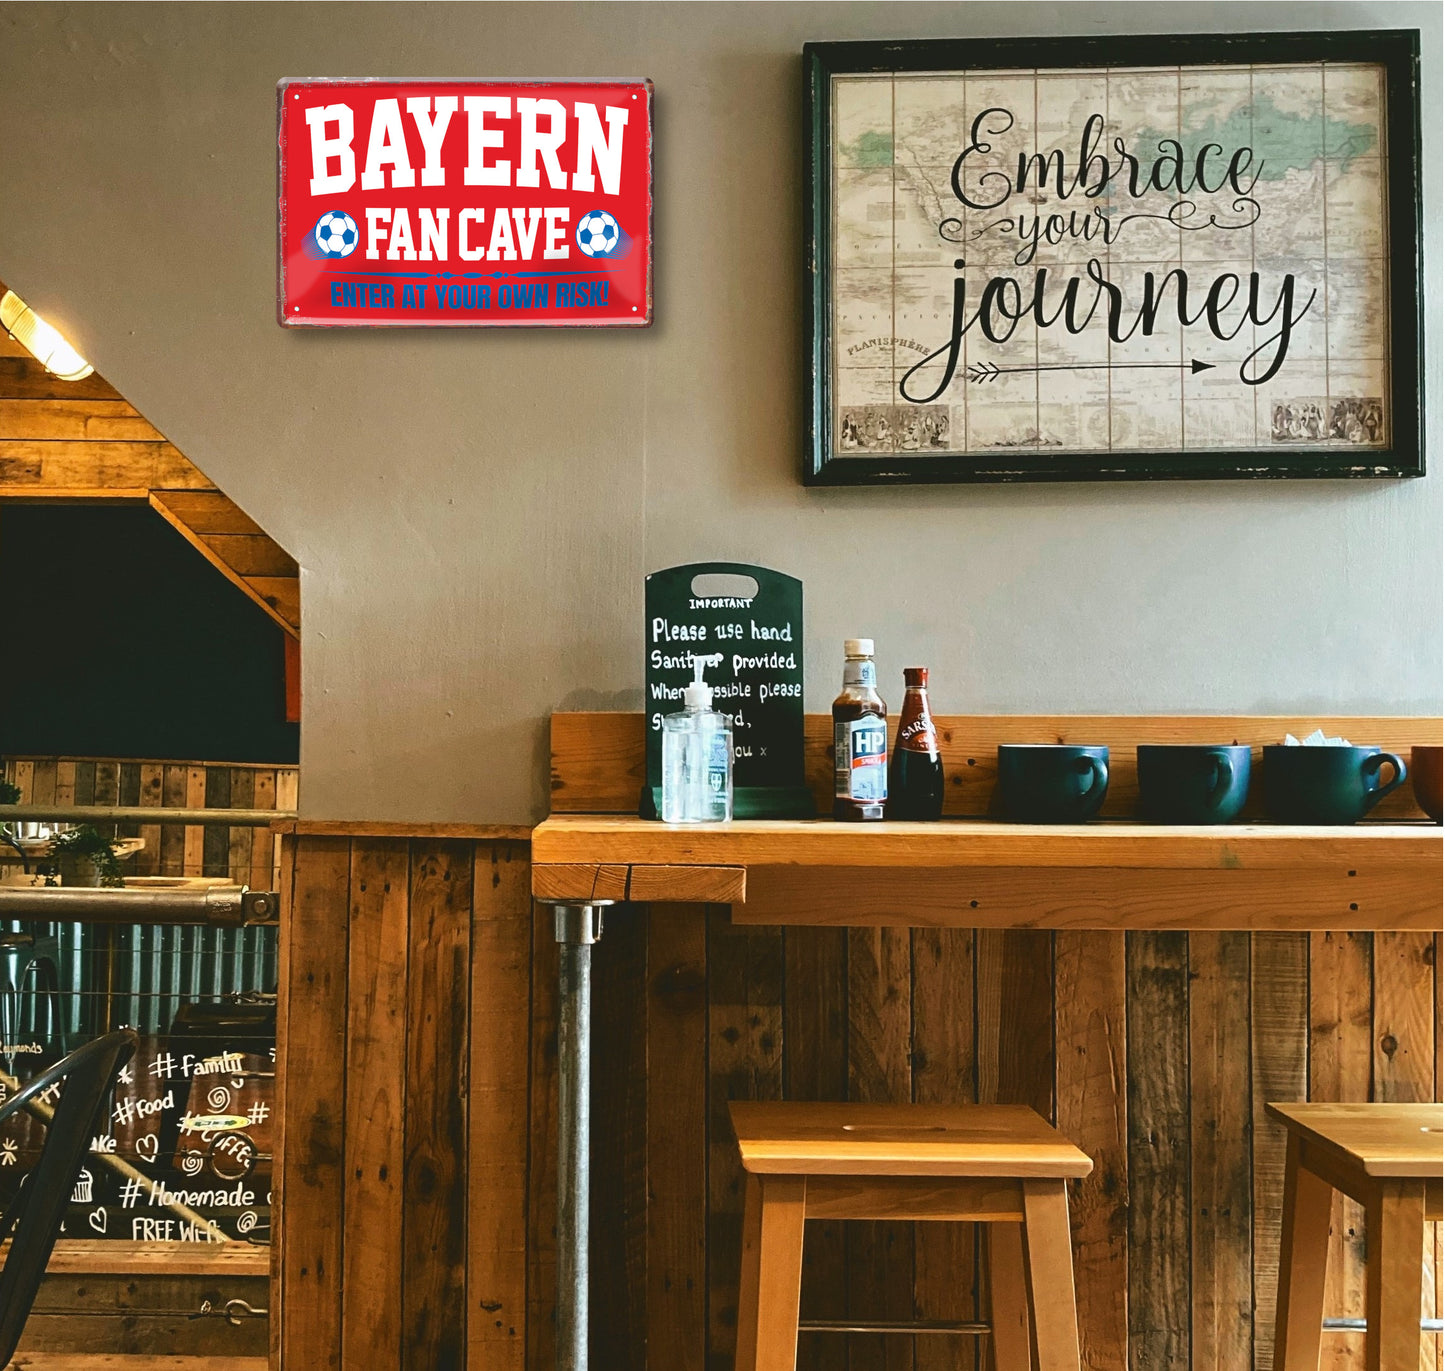 Blechschild ''Bayern Fan Cave'' 20x30cm